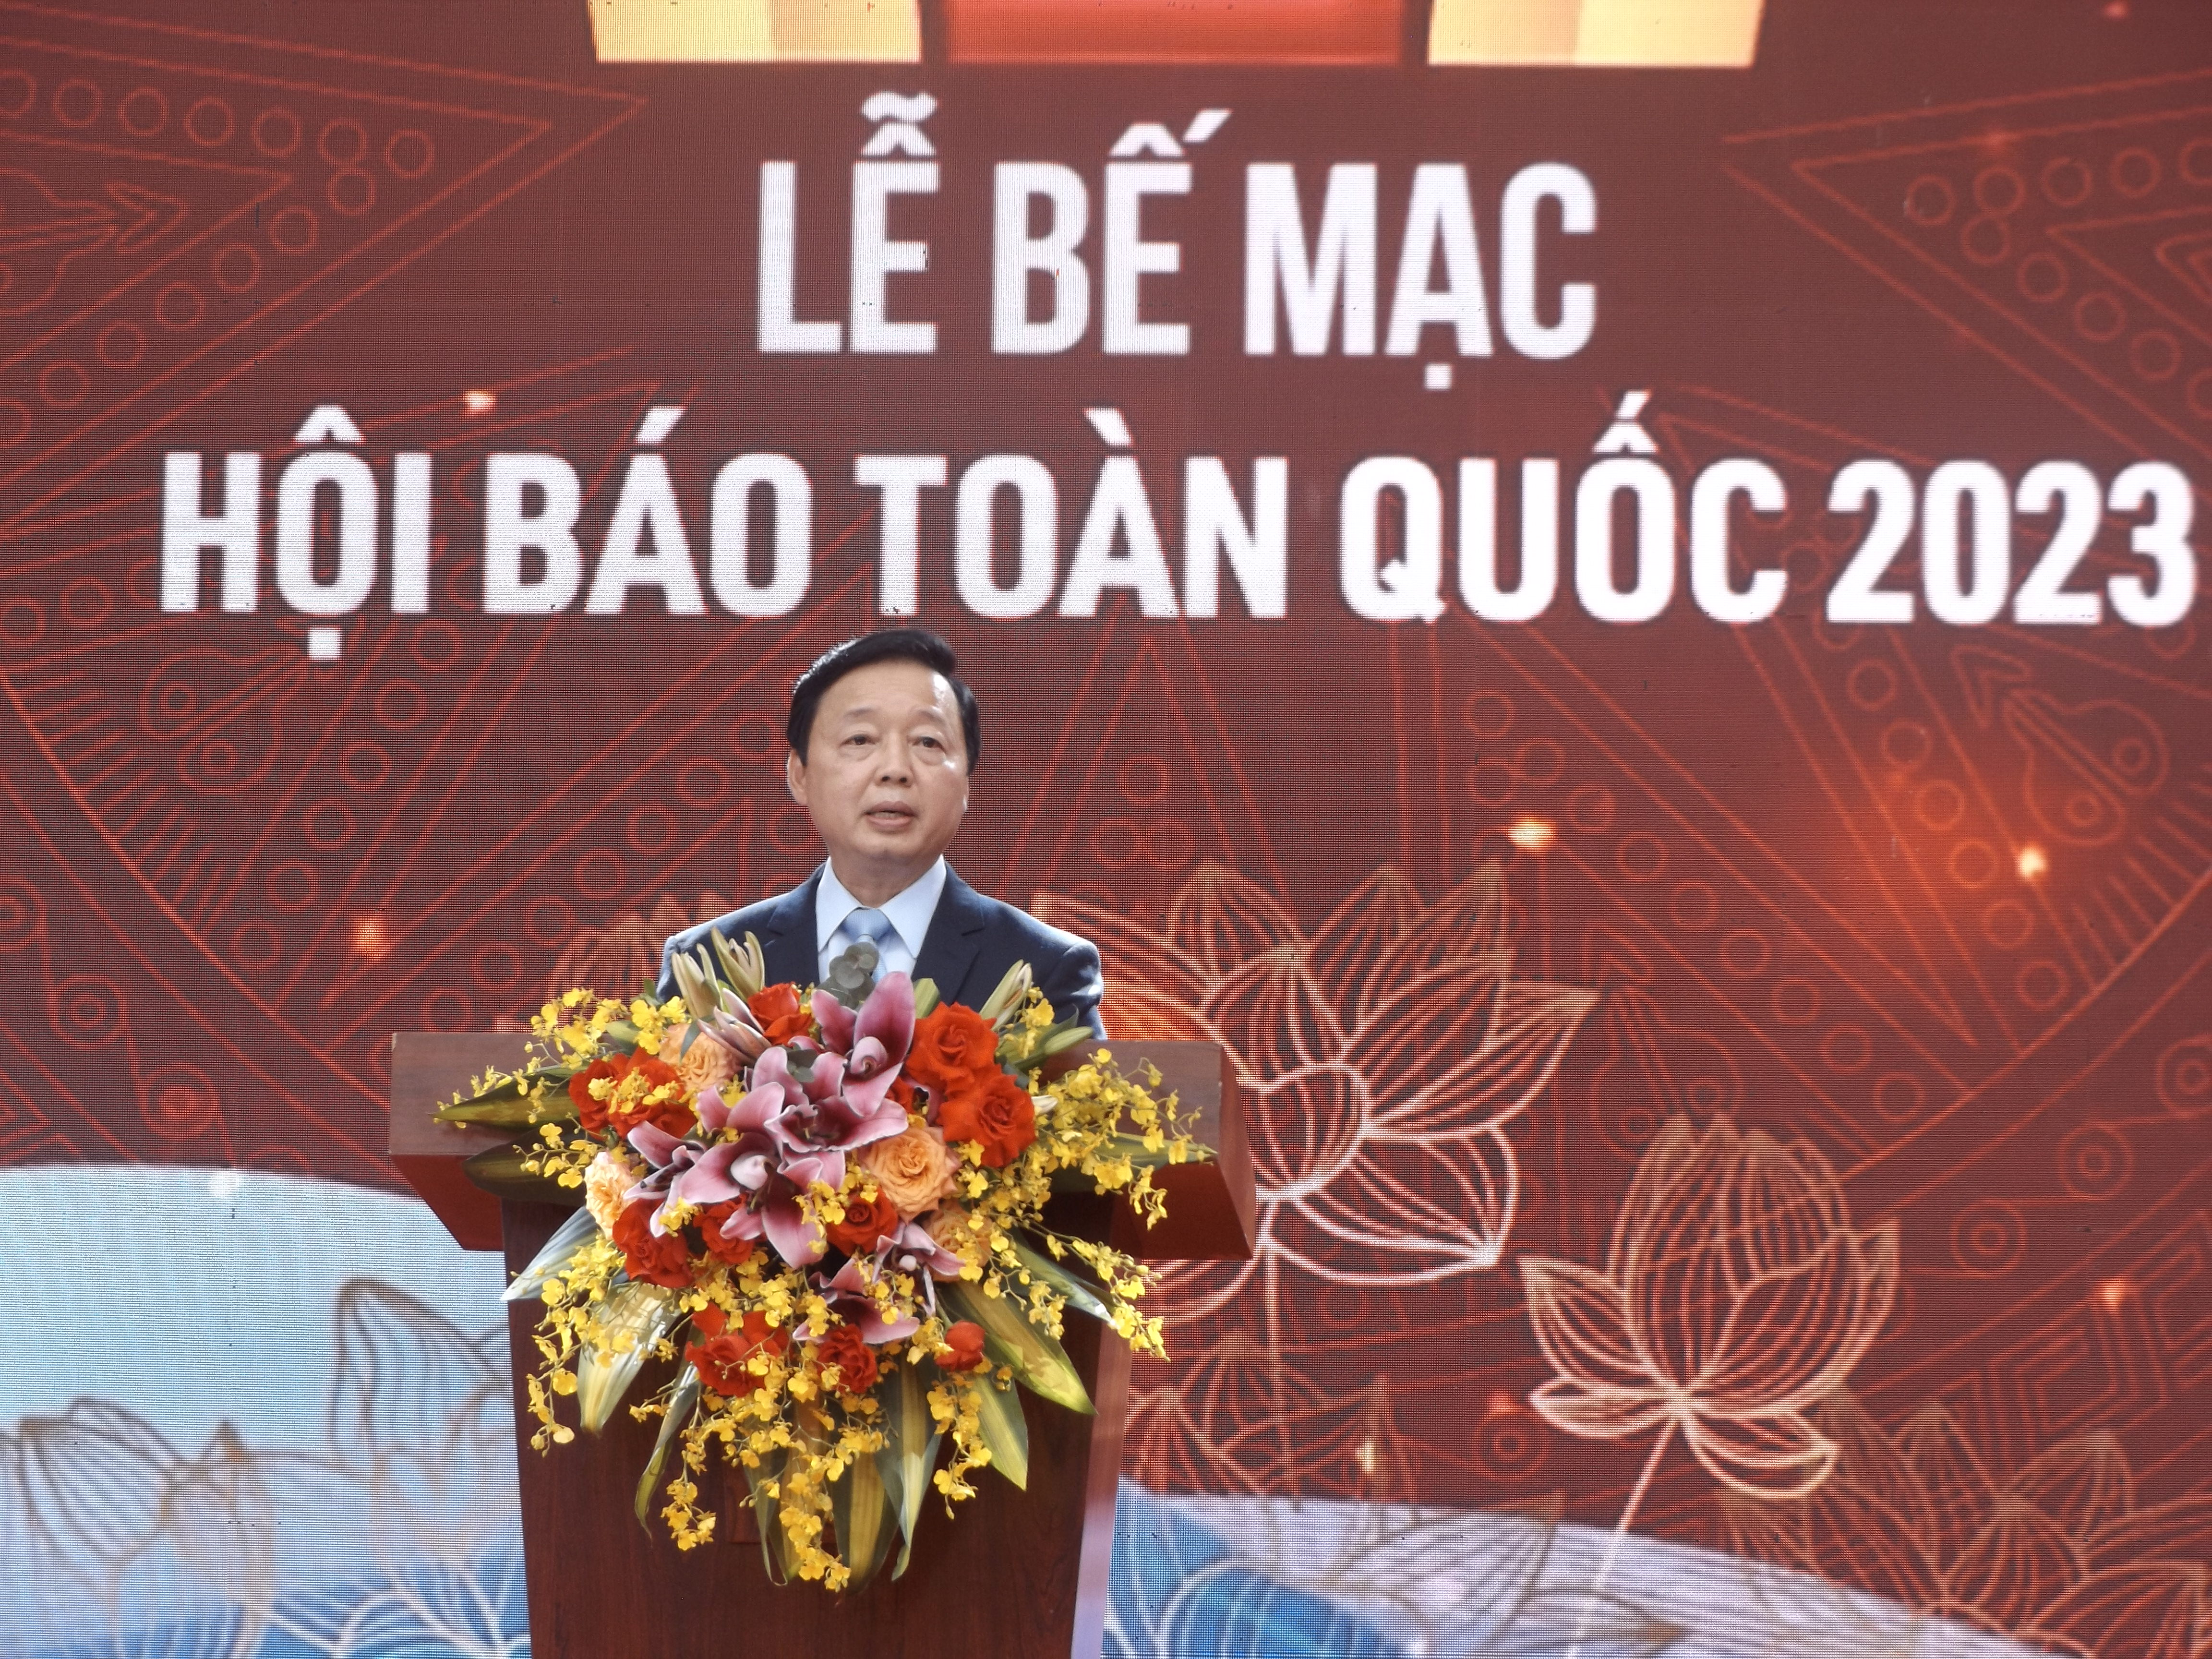  Đồng chí Trần Hồng Hà, Ủy viên Trung ương Đảng, Phó Thủ tướng Chính phủ chúc mừng thành công của Hội báo toàn quốc năm 2023.